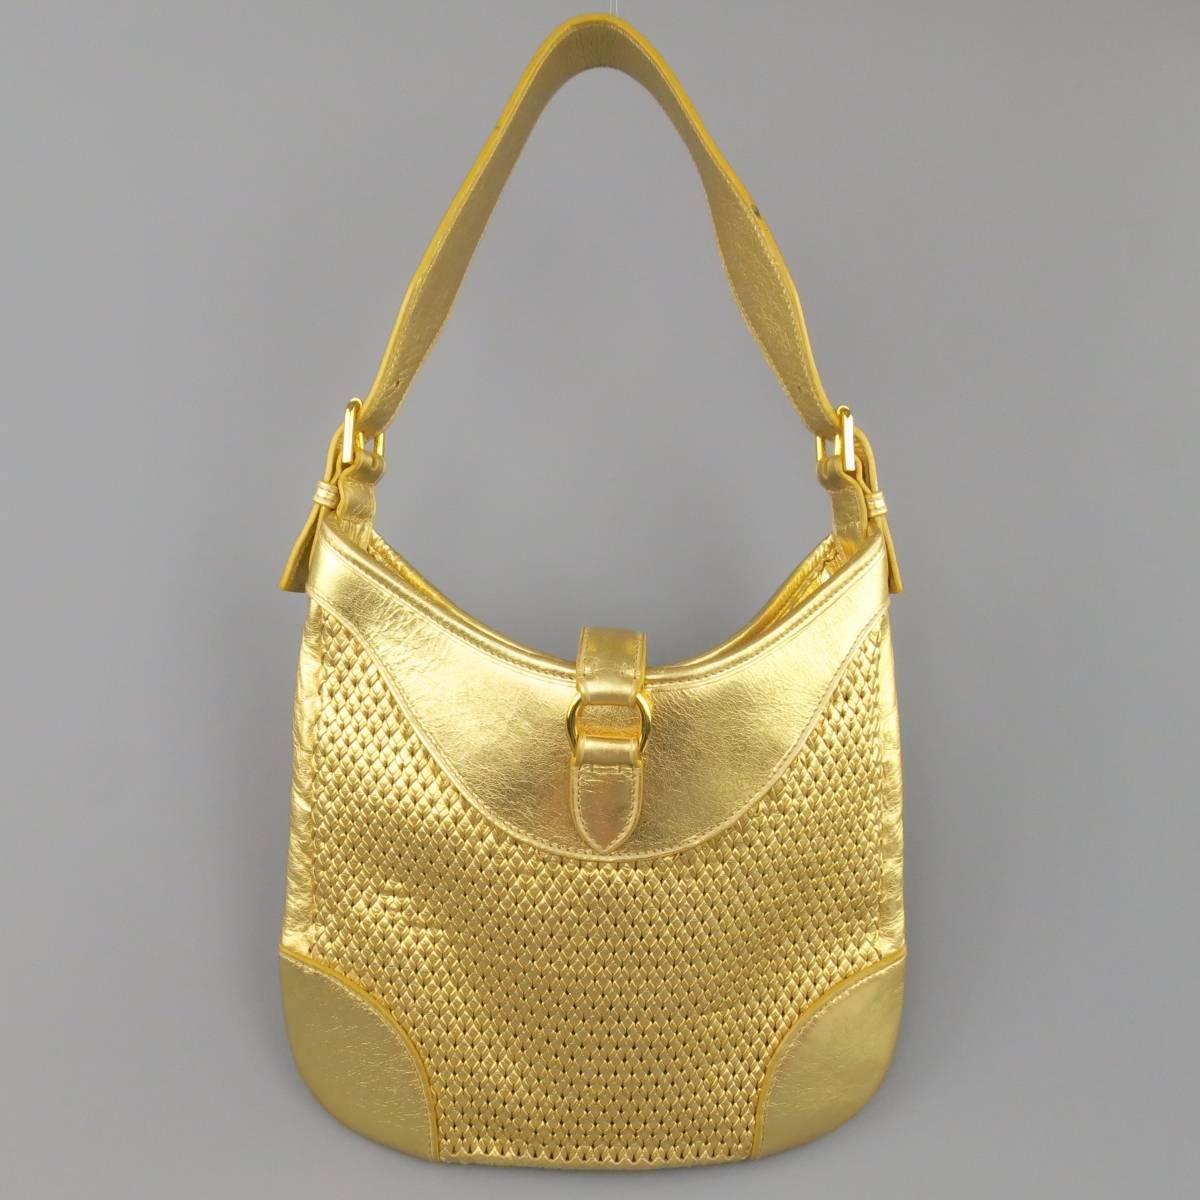 RALPH LAUREN Collection Metallic Gold Woven Leather Lock Shoulder Handbag 4